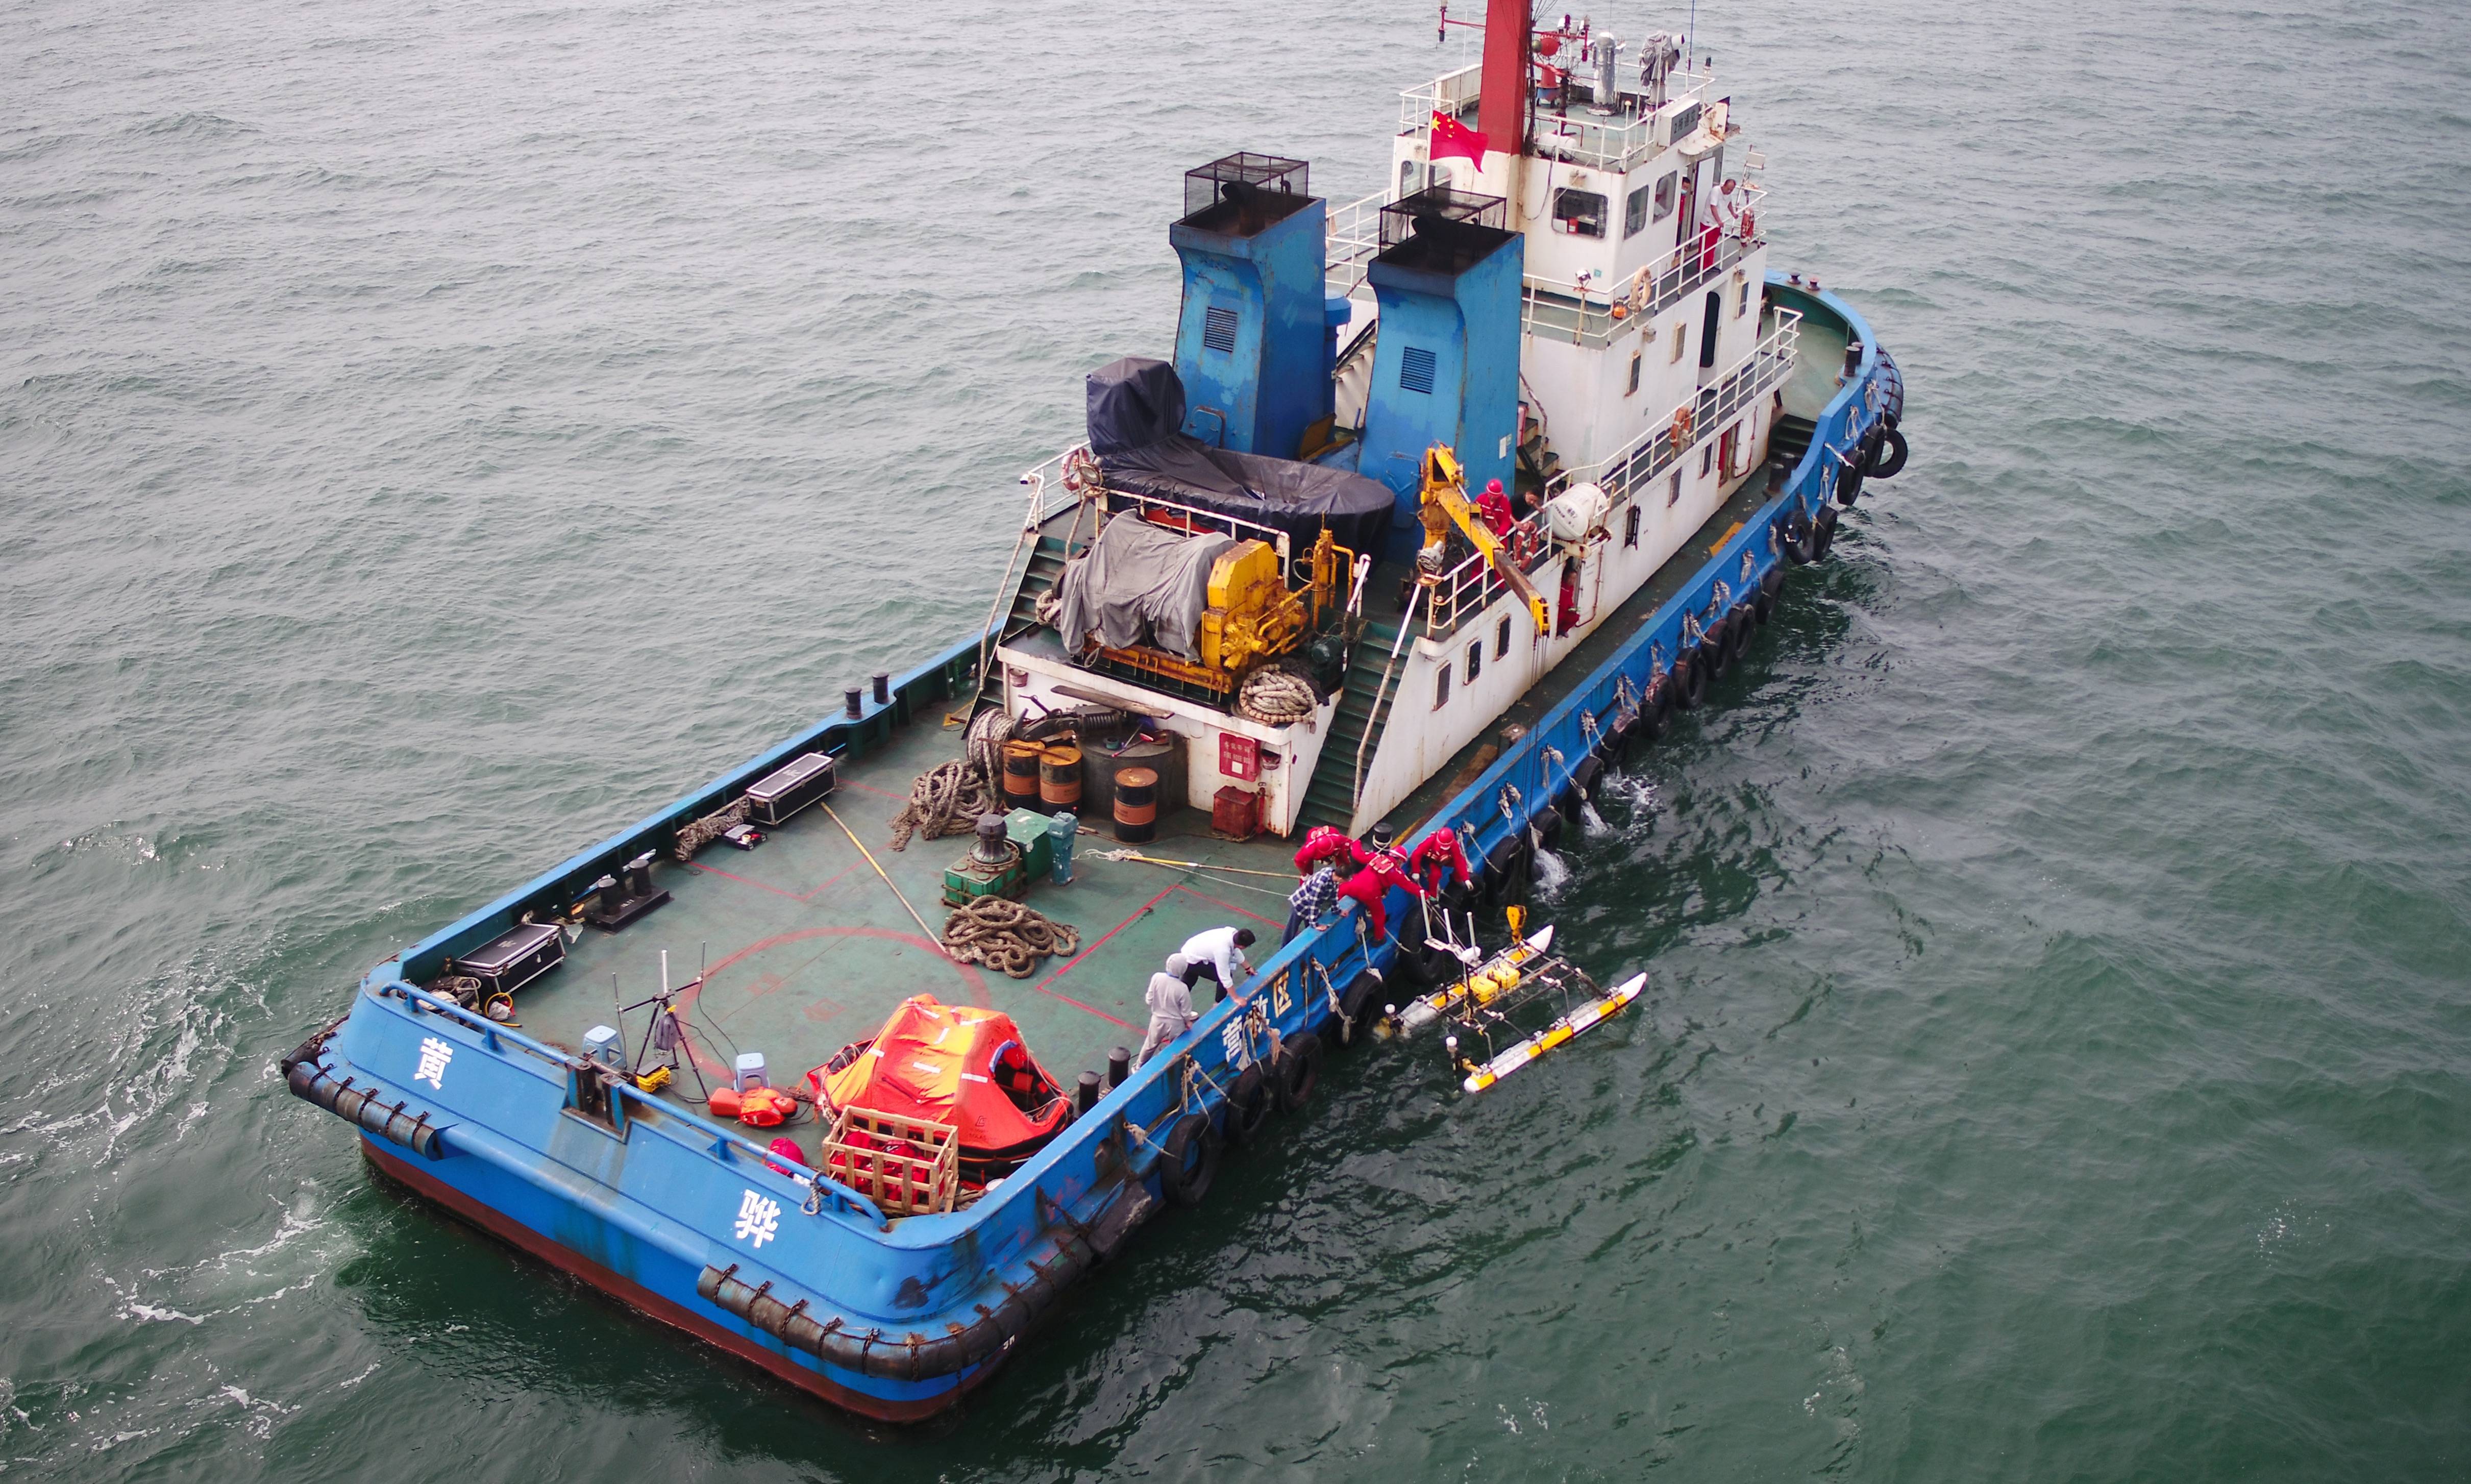 9月13日,在河北曹妃甸海域,搜救船释放智能无人艇进行搜寻救助工作(无